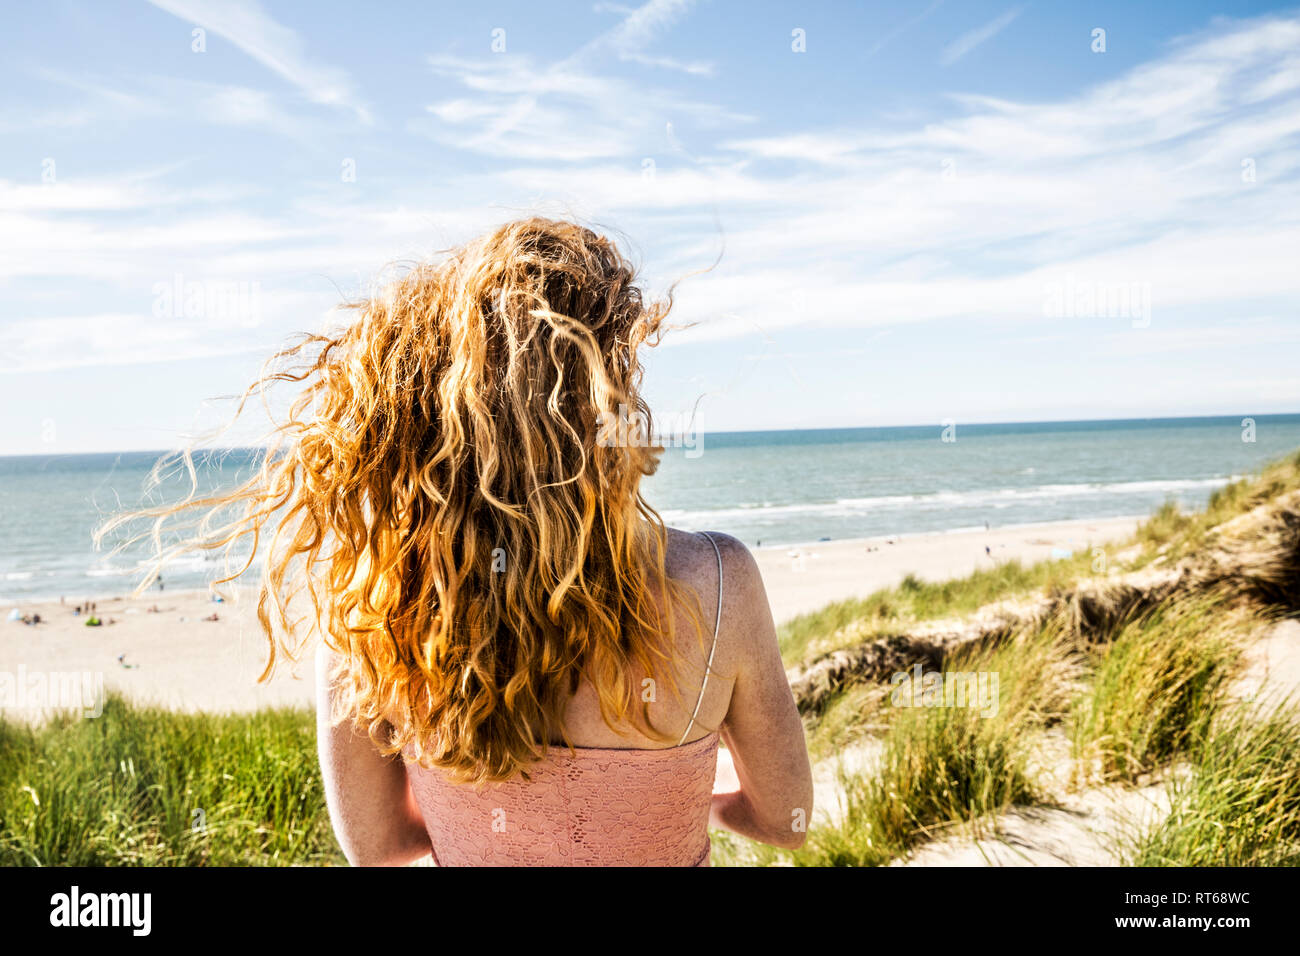 Netherlands, Zandvoort, woman standing in dunes Stock Photo